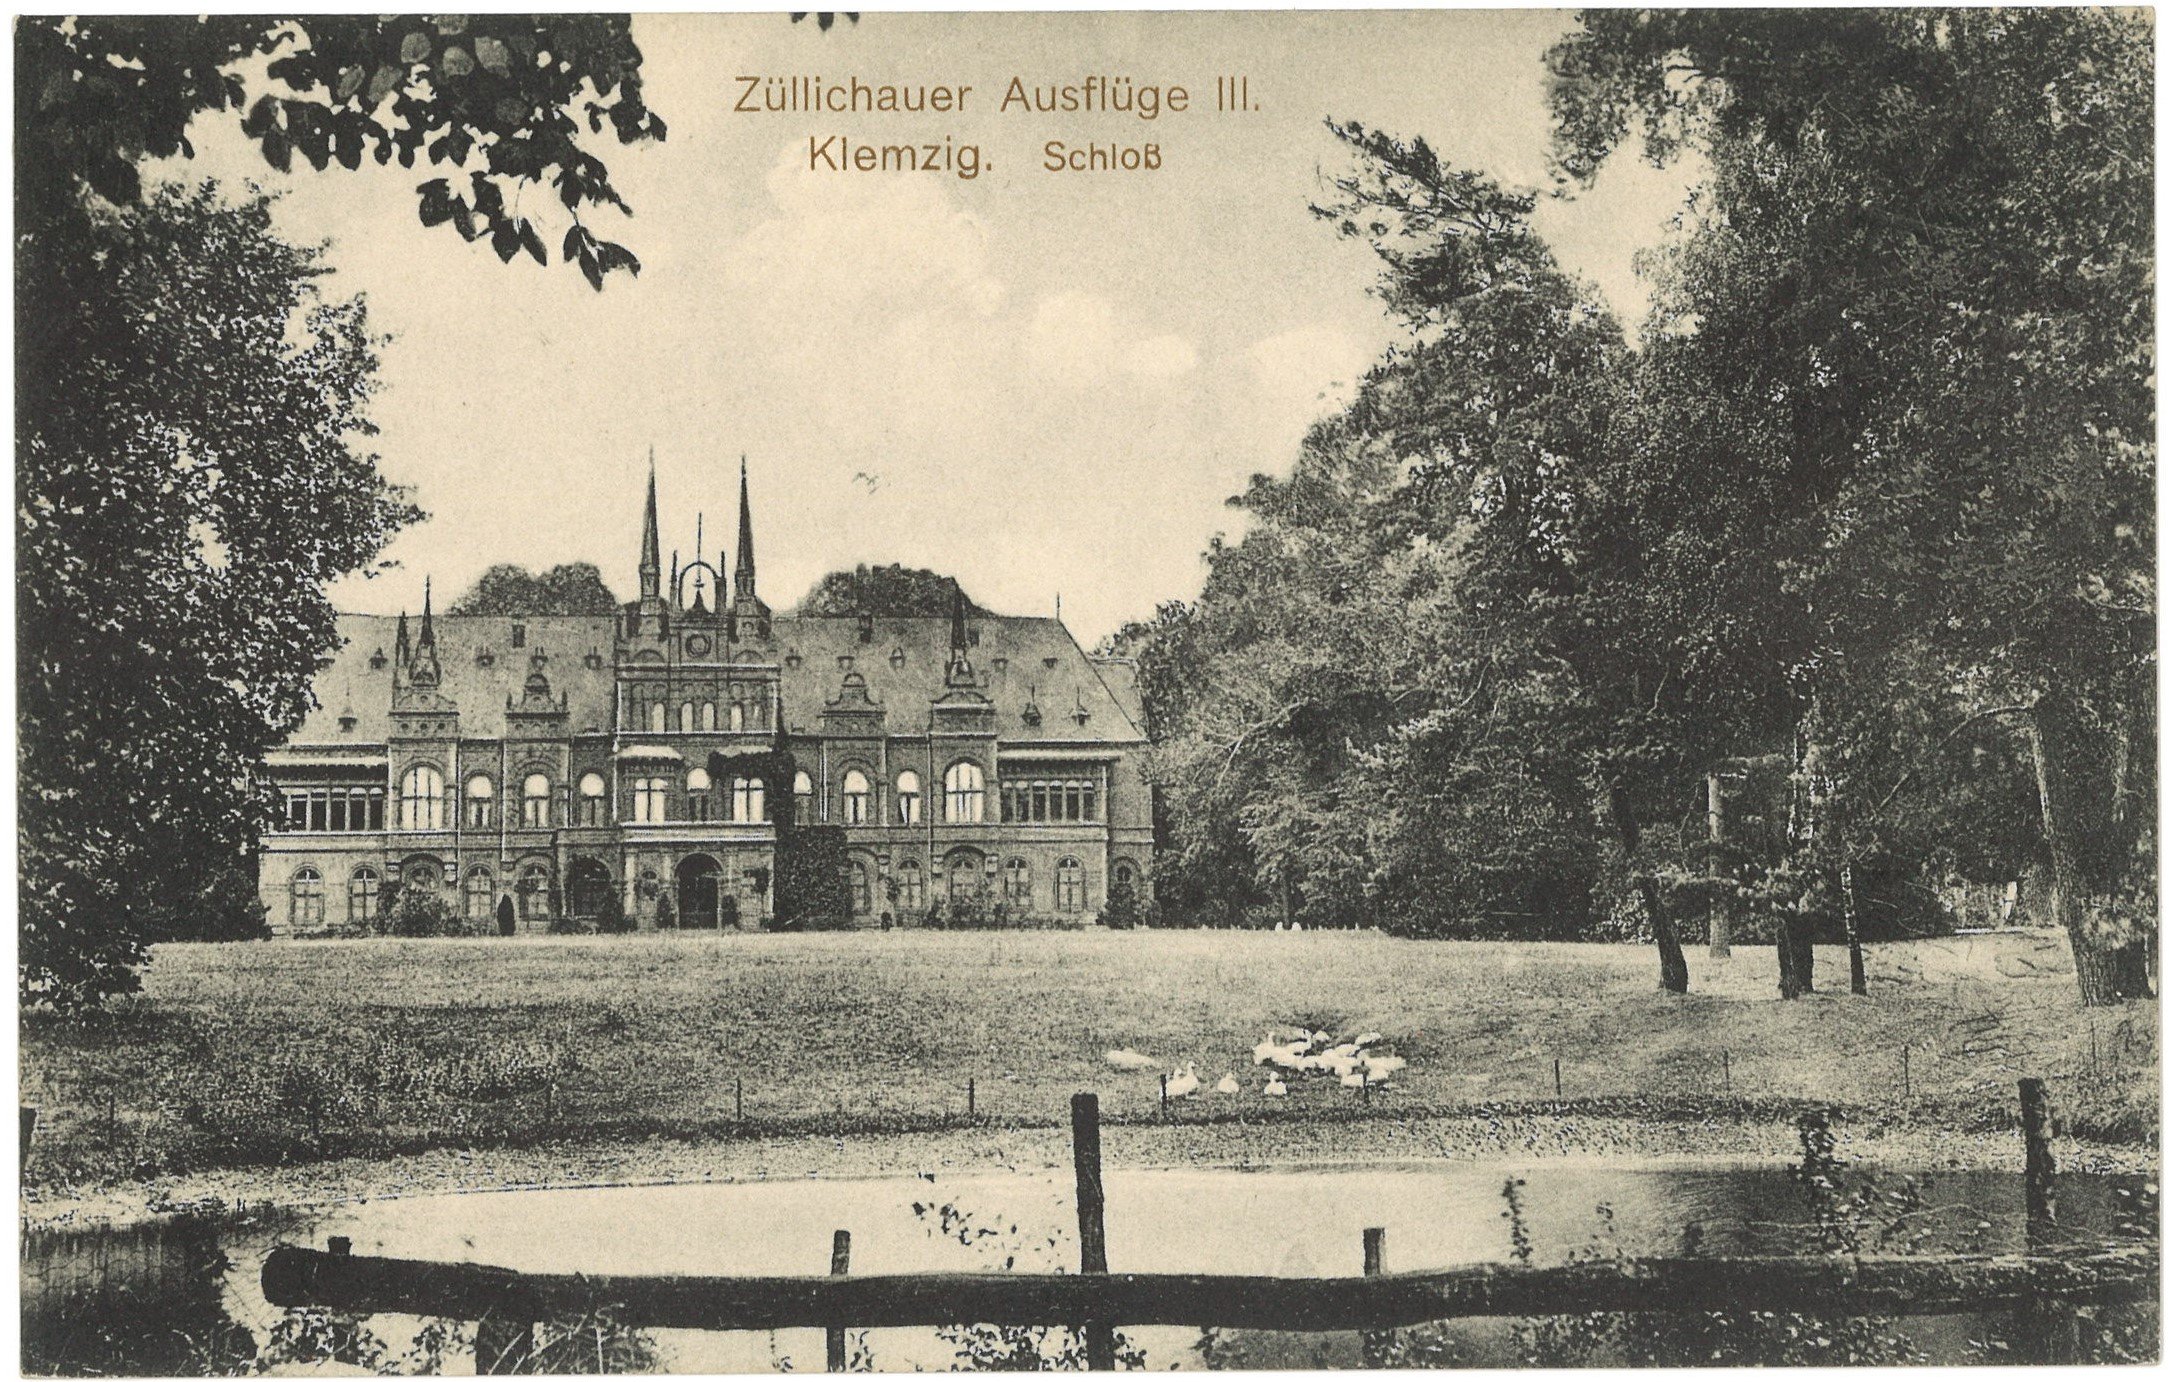 Klemzig (Kr. Züllichau-Schwiebus) [Klępsk]: Schloss (Landesgeschichtliche Vereinigung für die Mark Brandenburg e.V. CC BY)